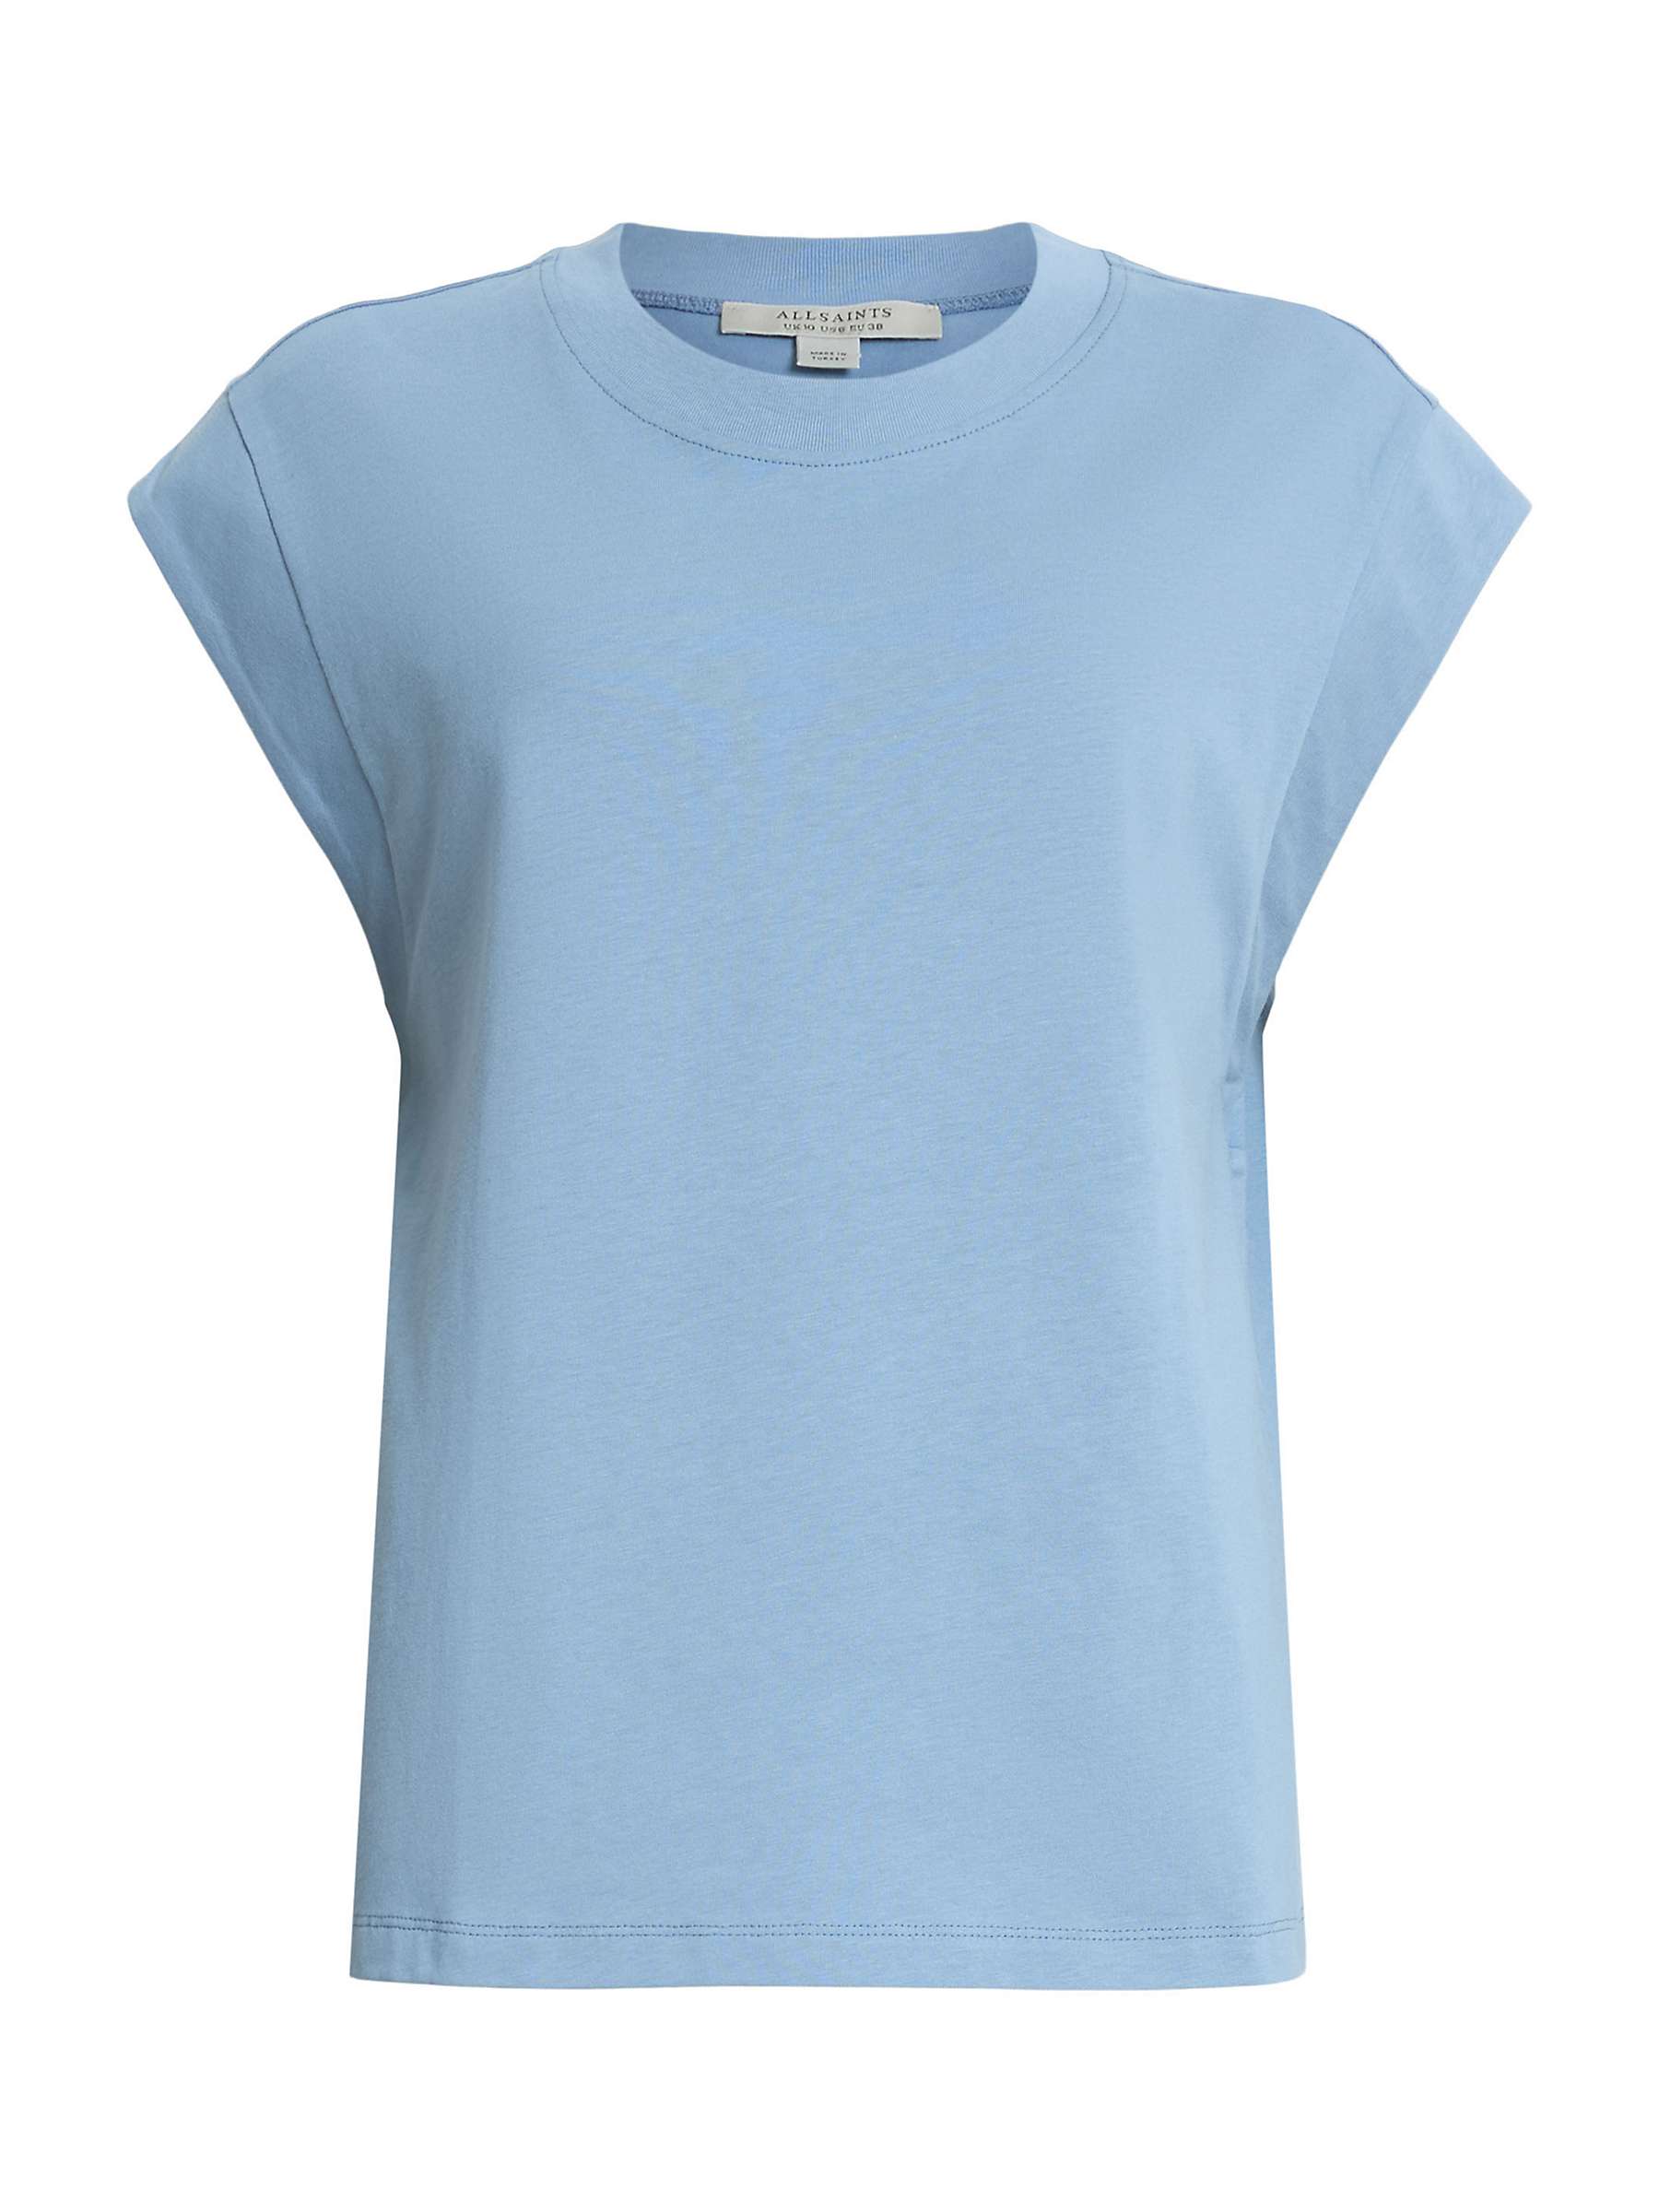 Buy AllSaints Esme Cap Sleeve Organic Cotton T-Shirt, Denim Blue Online at johnlewis.com